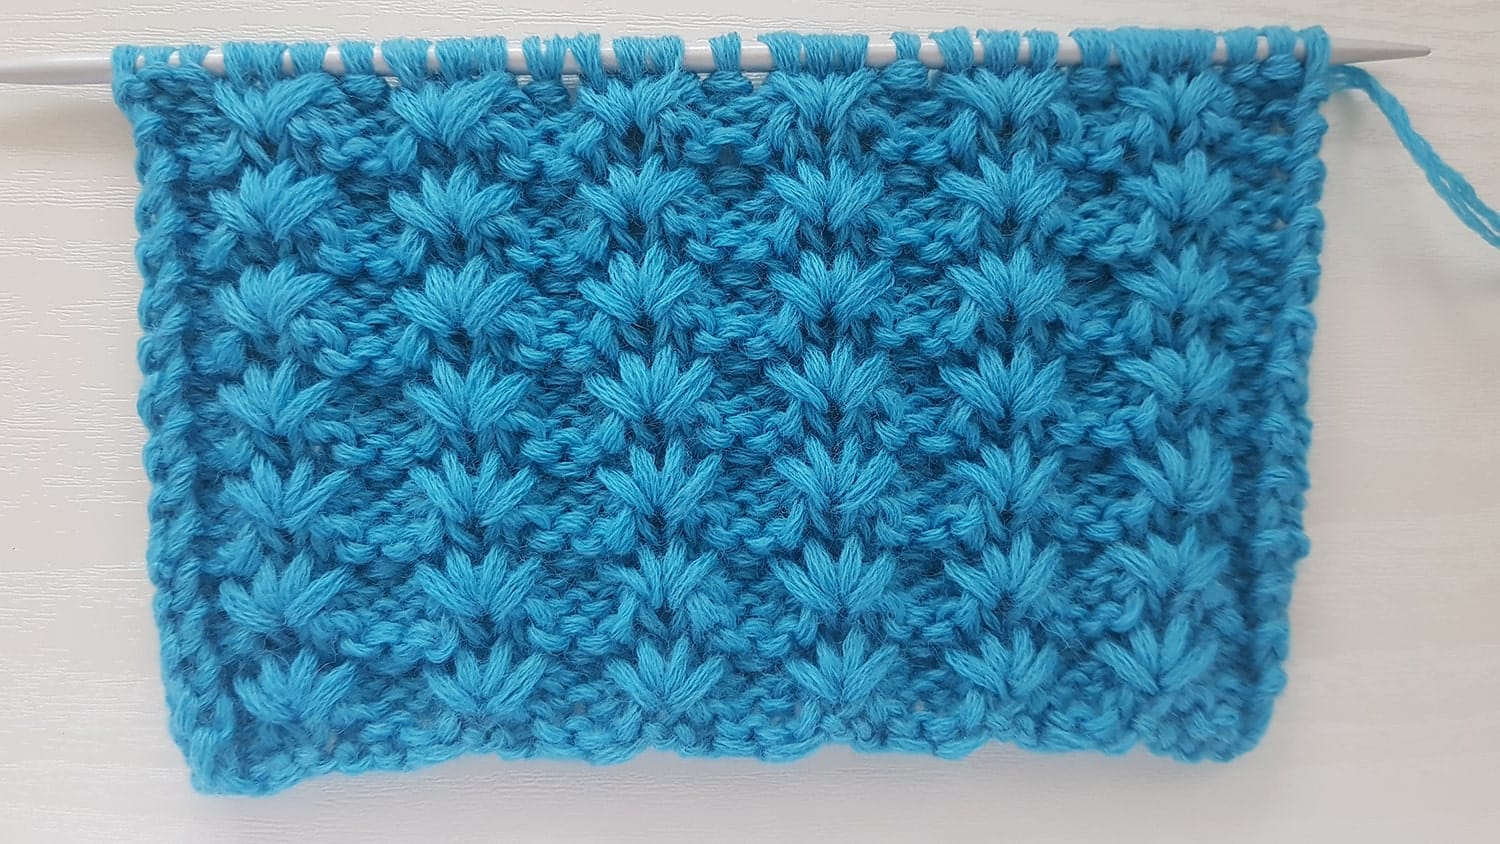 Star Stitch Knitting Pattern. 